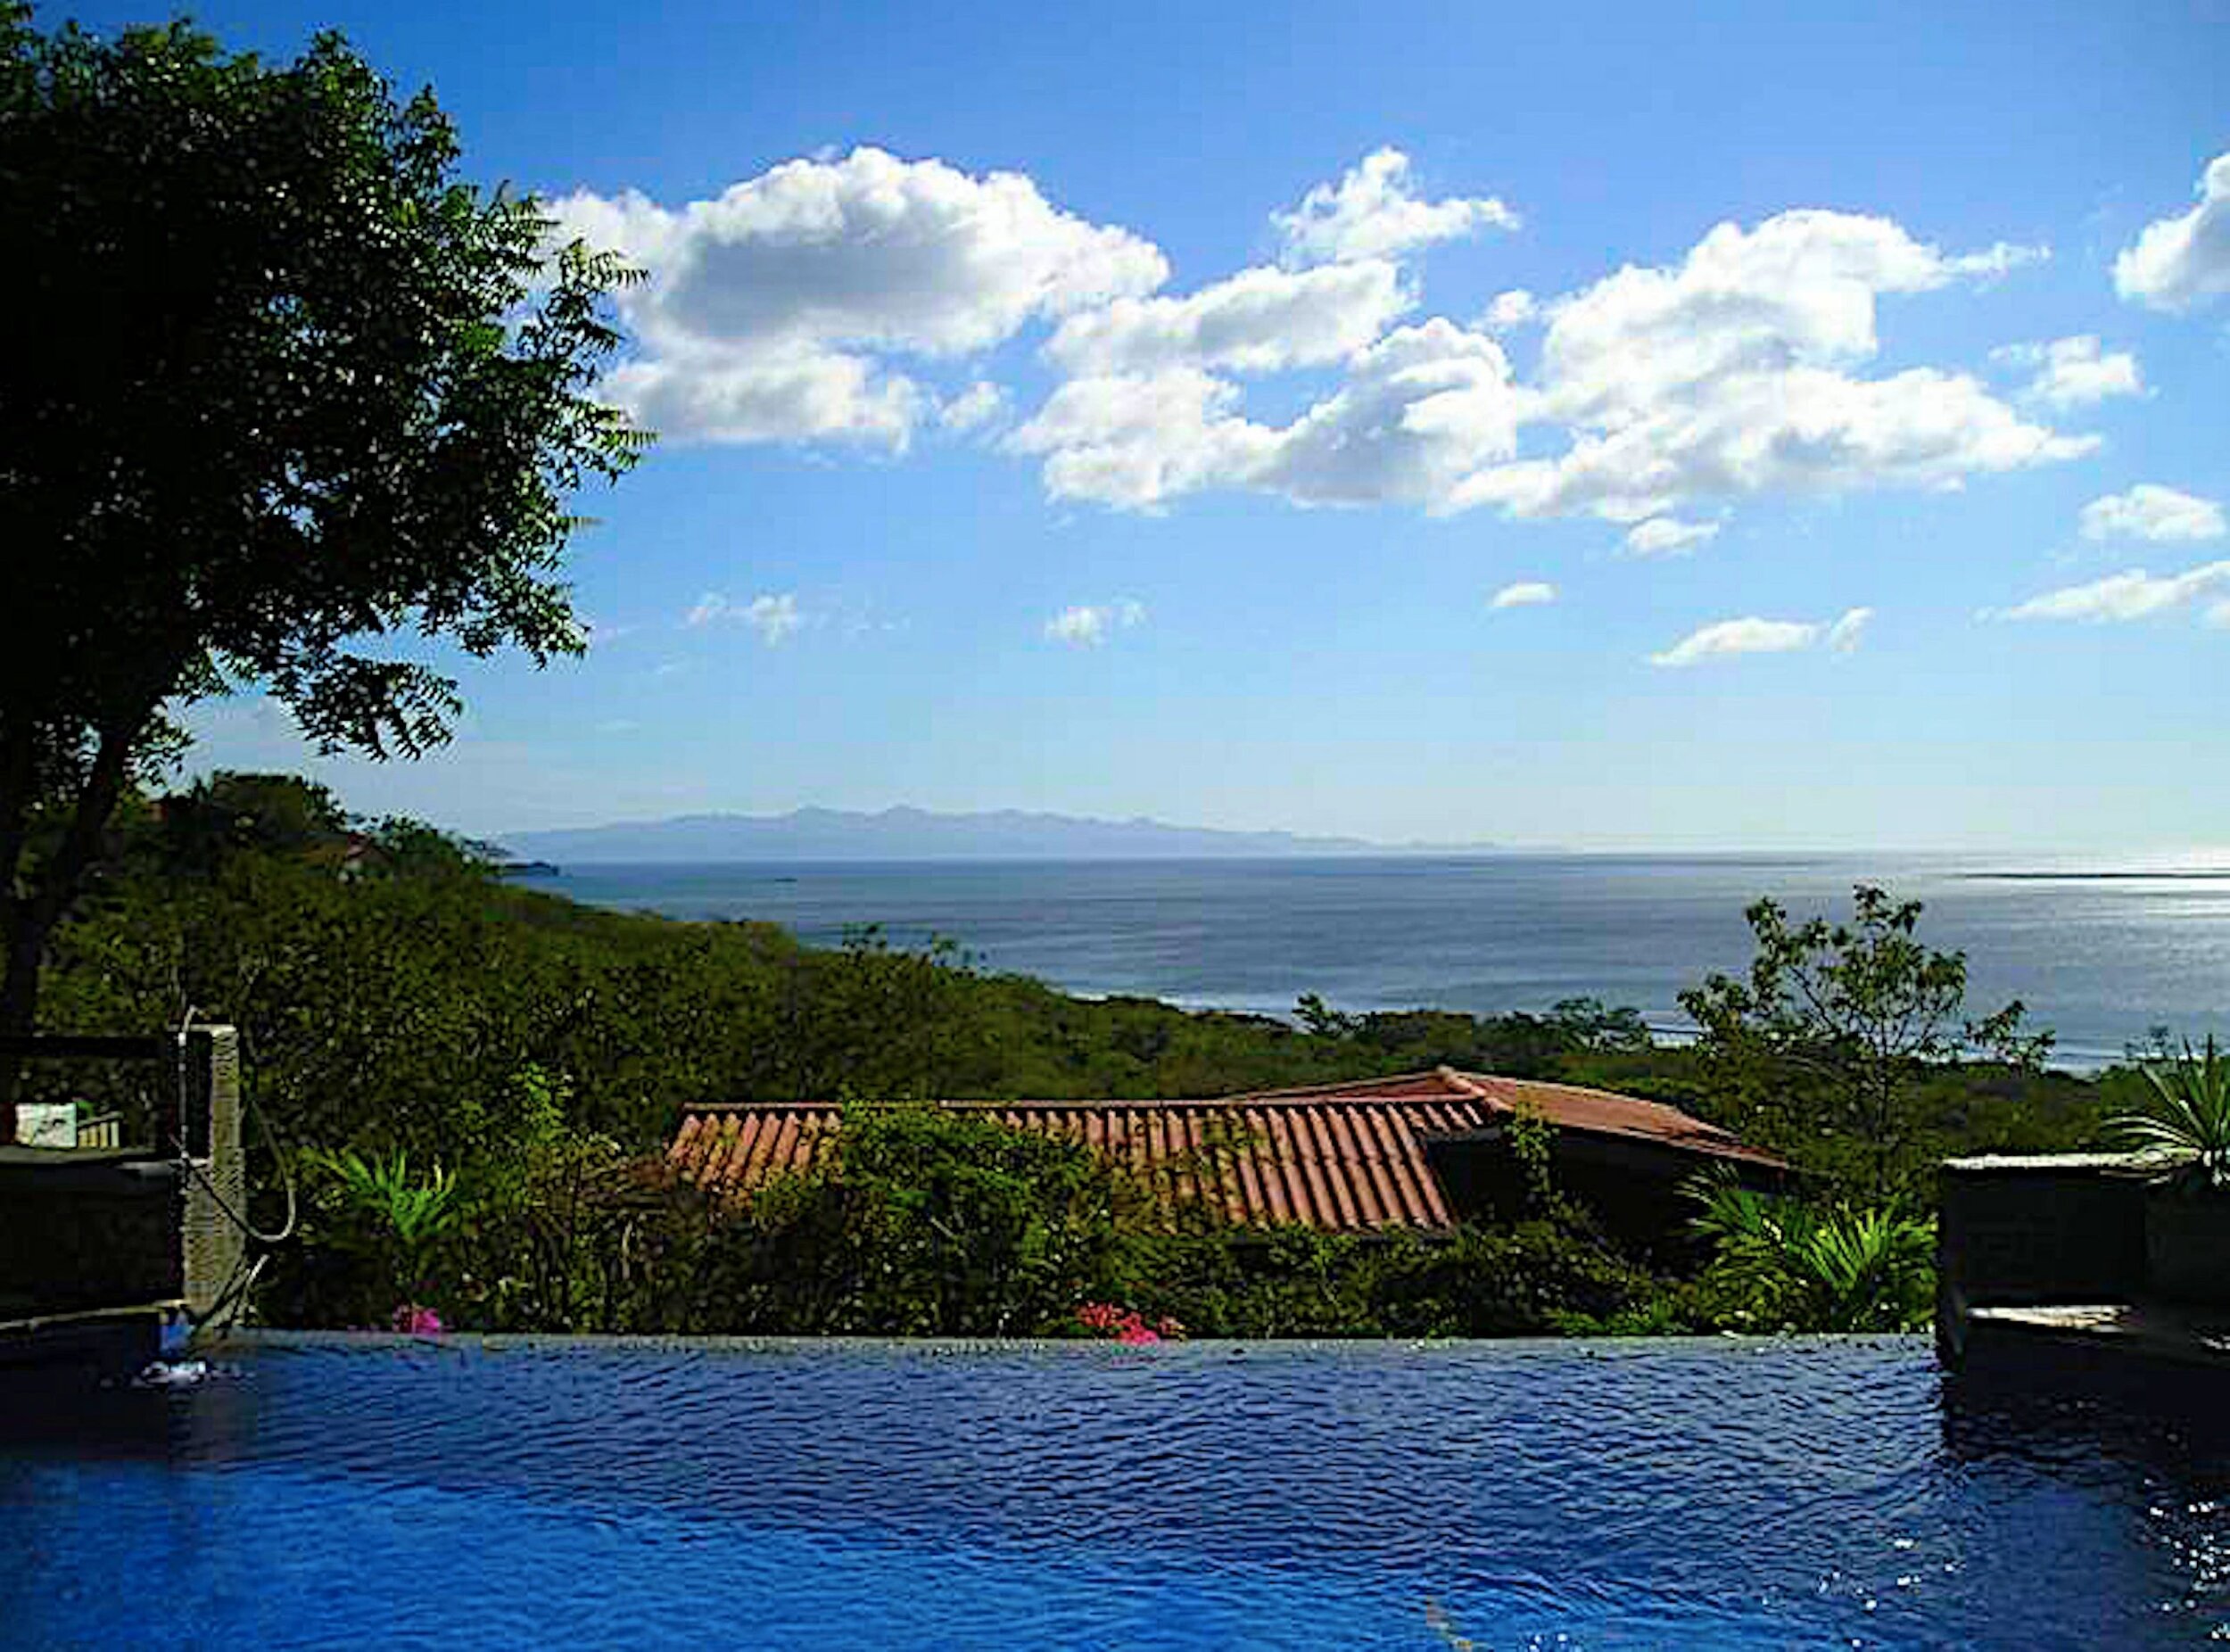 Coco Beach Paradise Real Estate For Sale San Juan Del Sur Nicaragua 1.jpeg